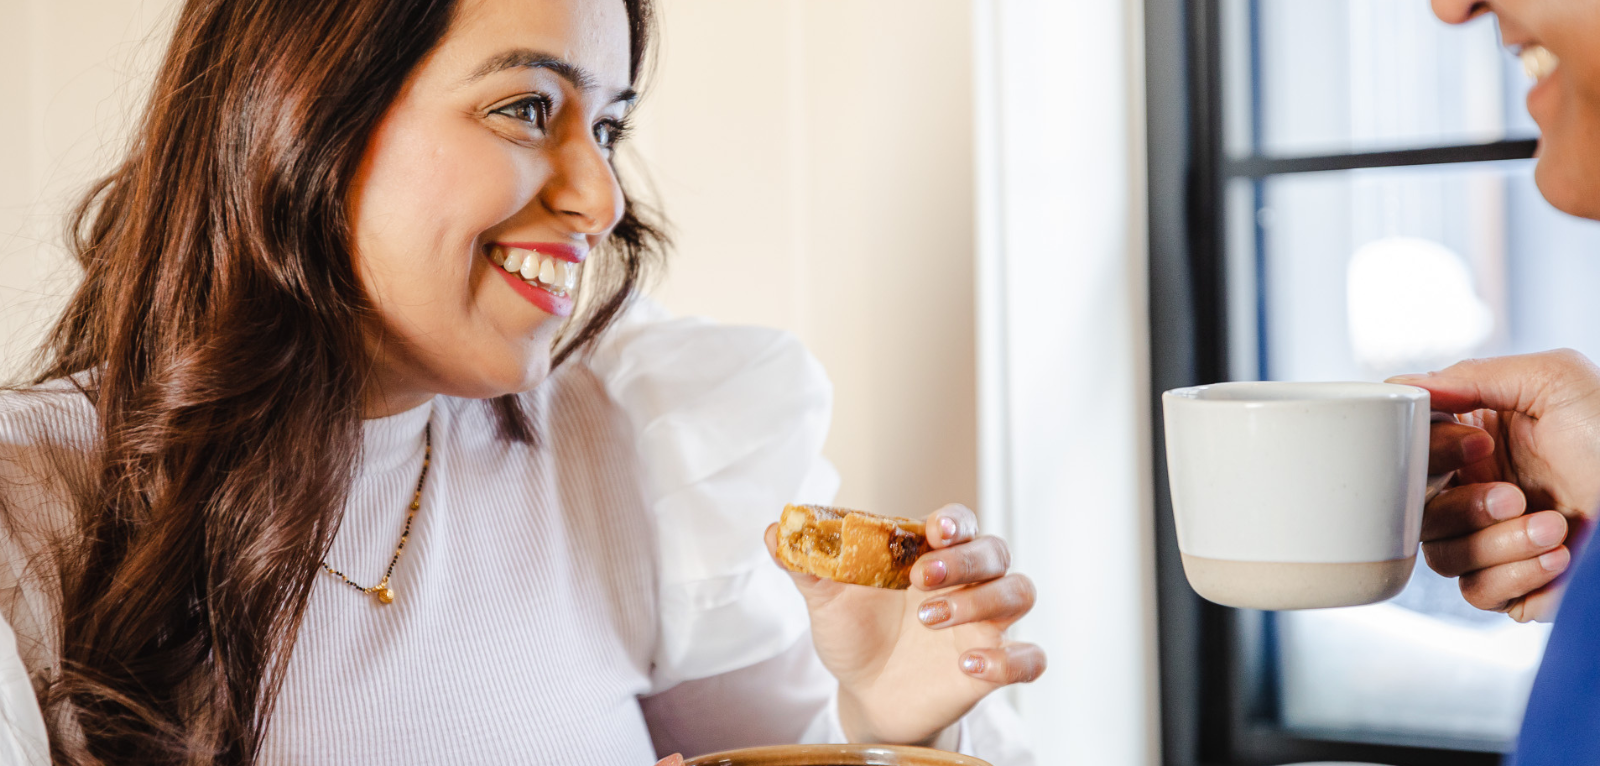 Women smiling while eating a tart